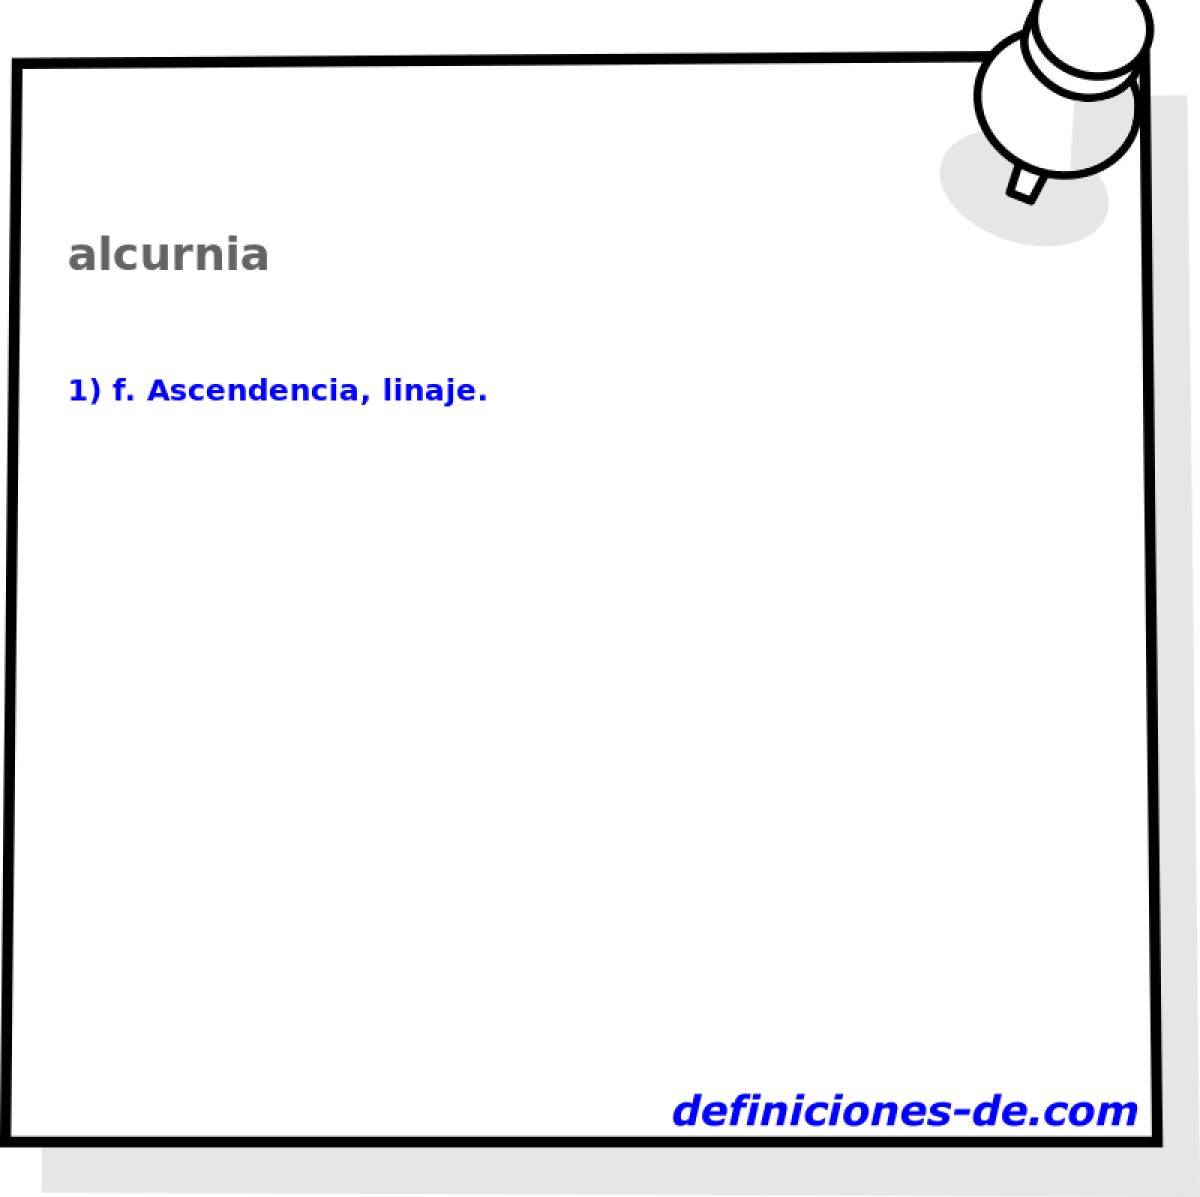 alcurnia 